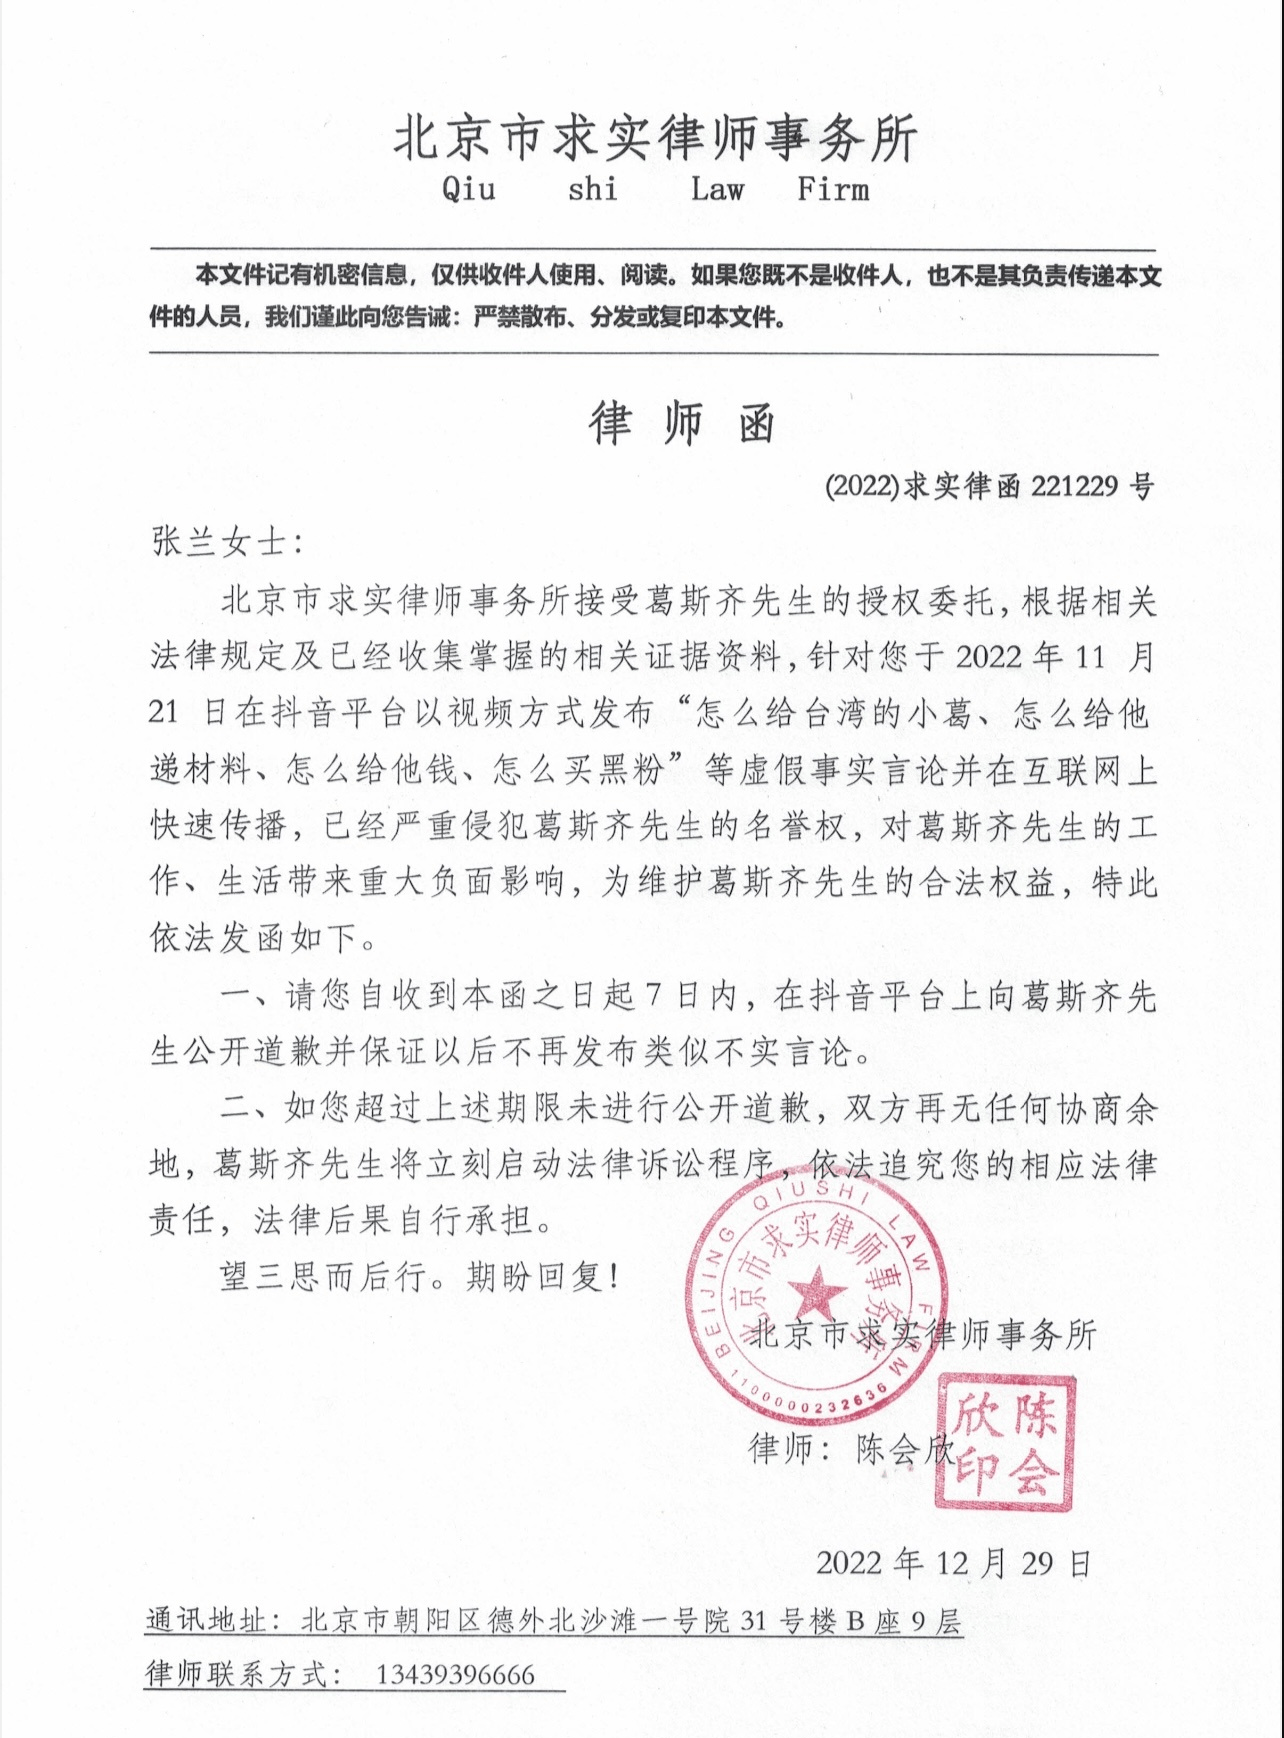 葛斯齐向张兰发律师函 要求7日内公开报歉